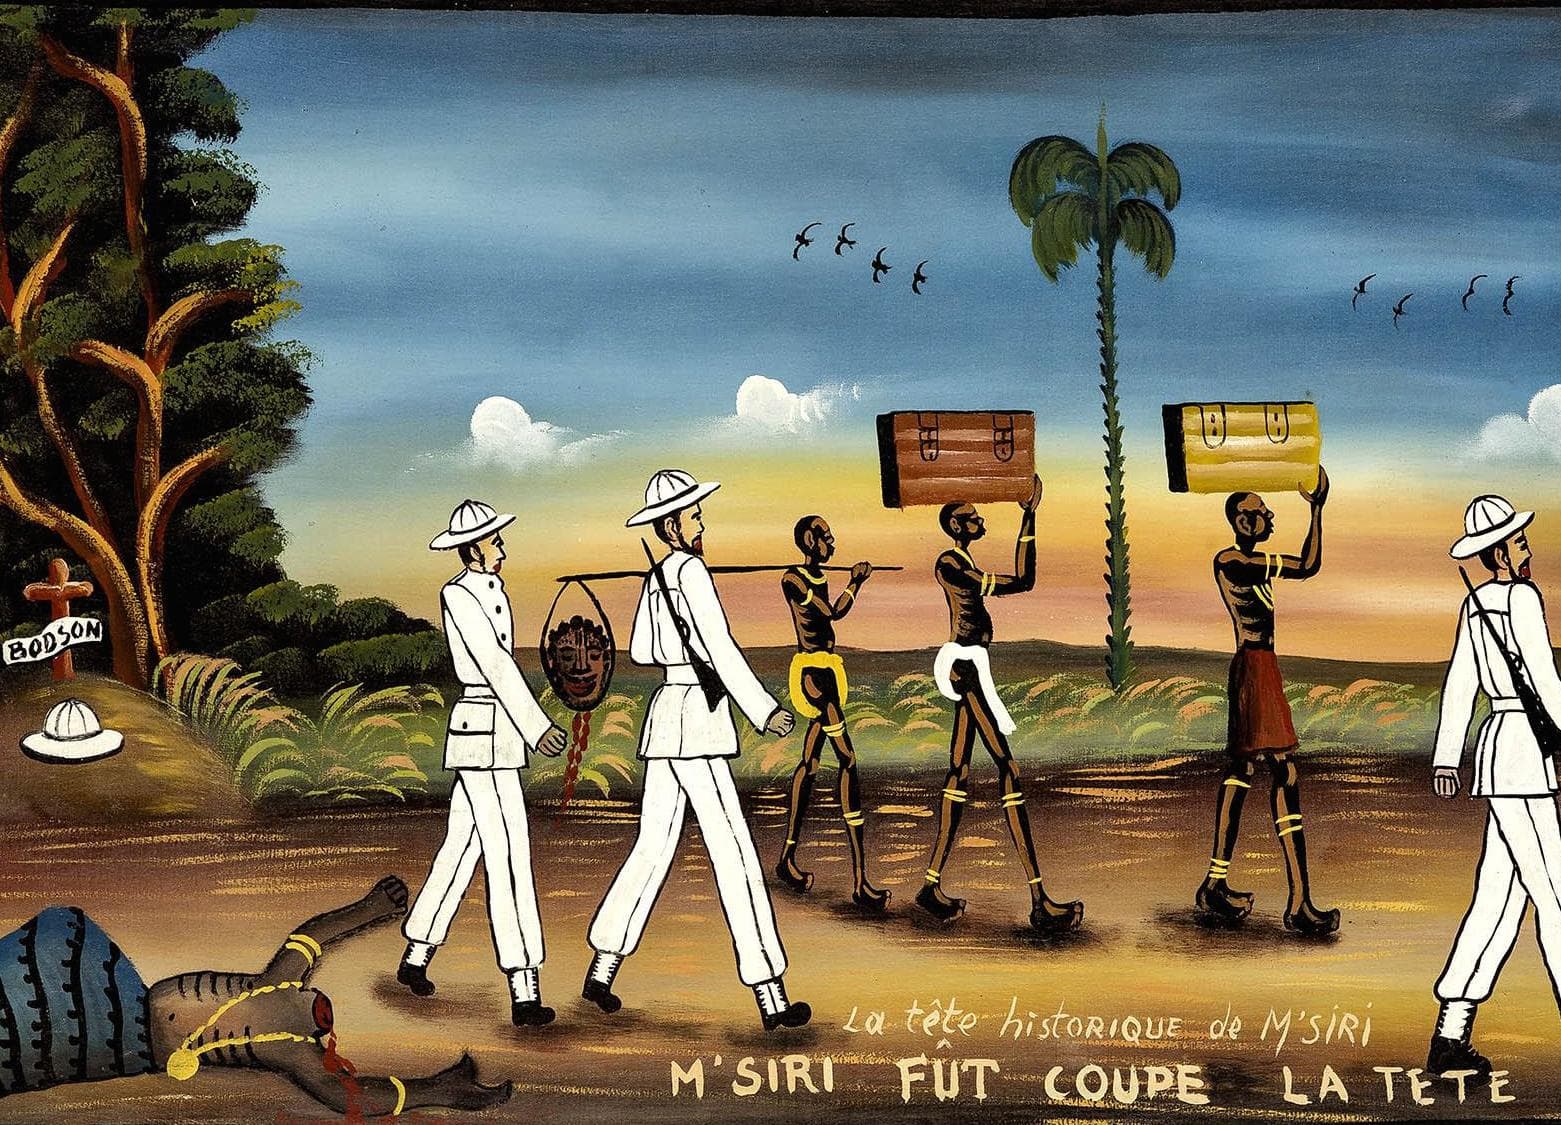 A painting by Tshibumba Kanda-Matulu showing Msiri's execution